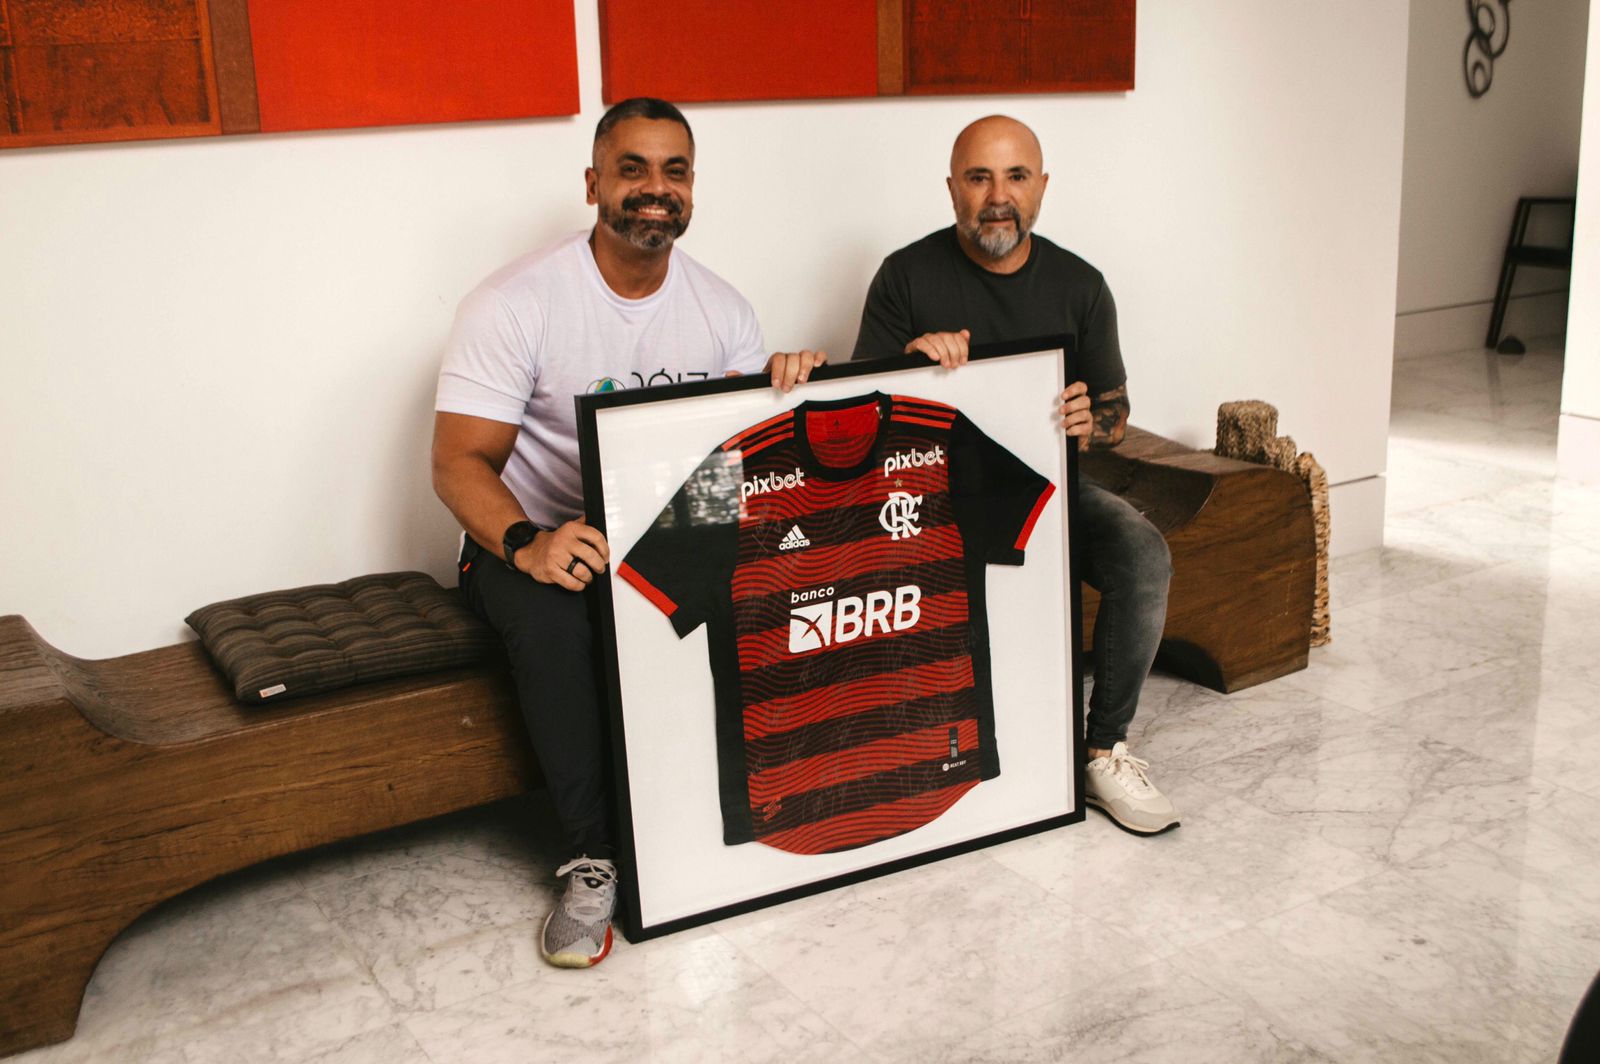 Sampaoli doa camisa do Flamengo autografada pelos jogadores para projeto social na Cidade de Deus (Foto: Divulgação)